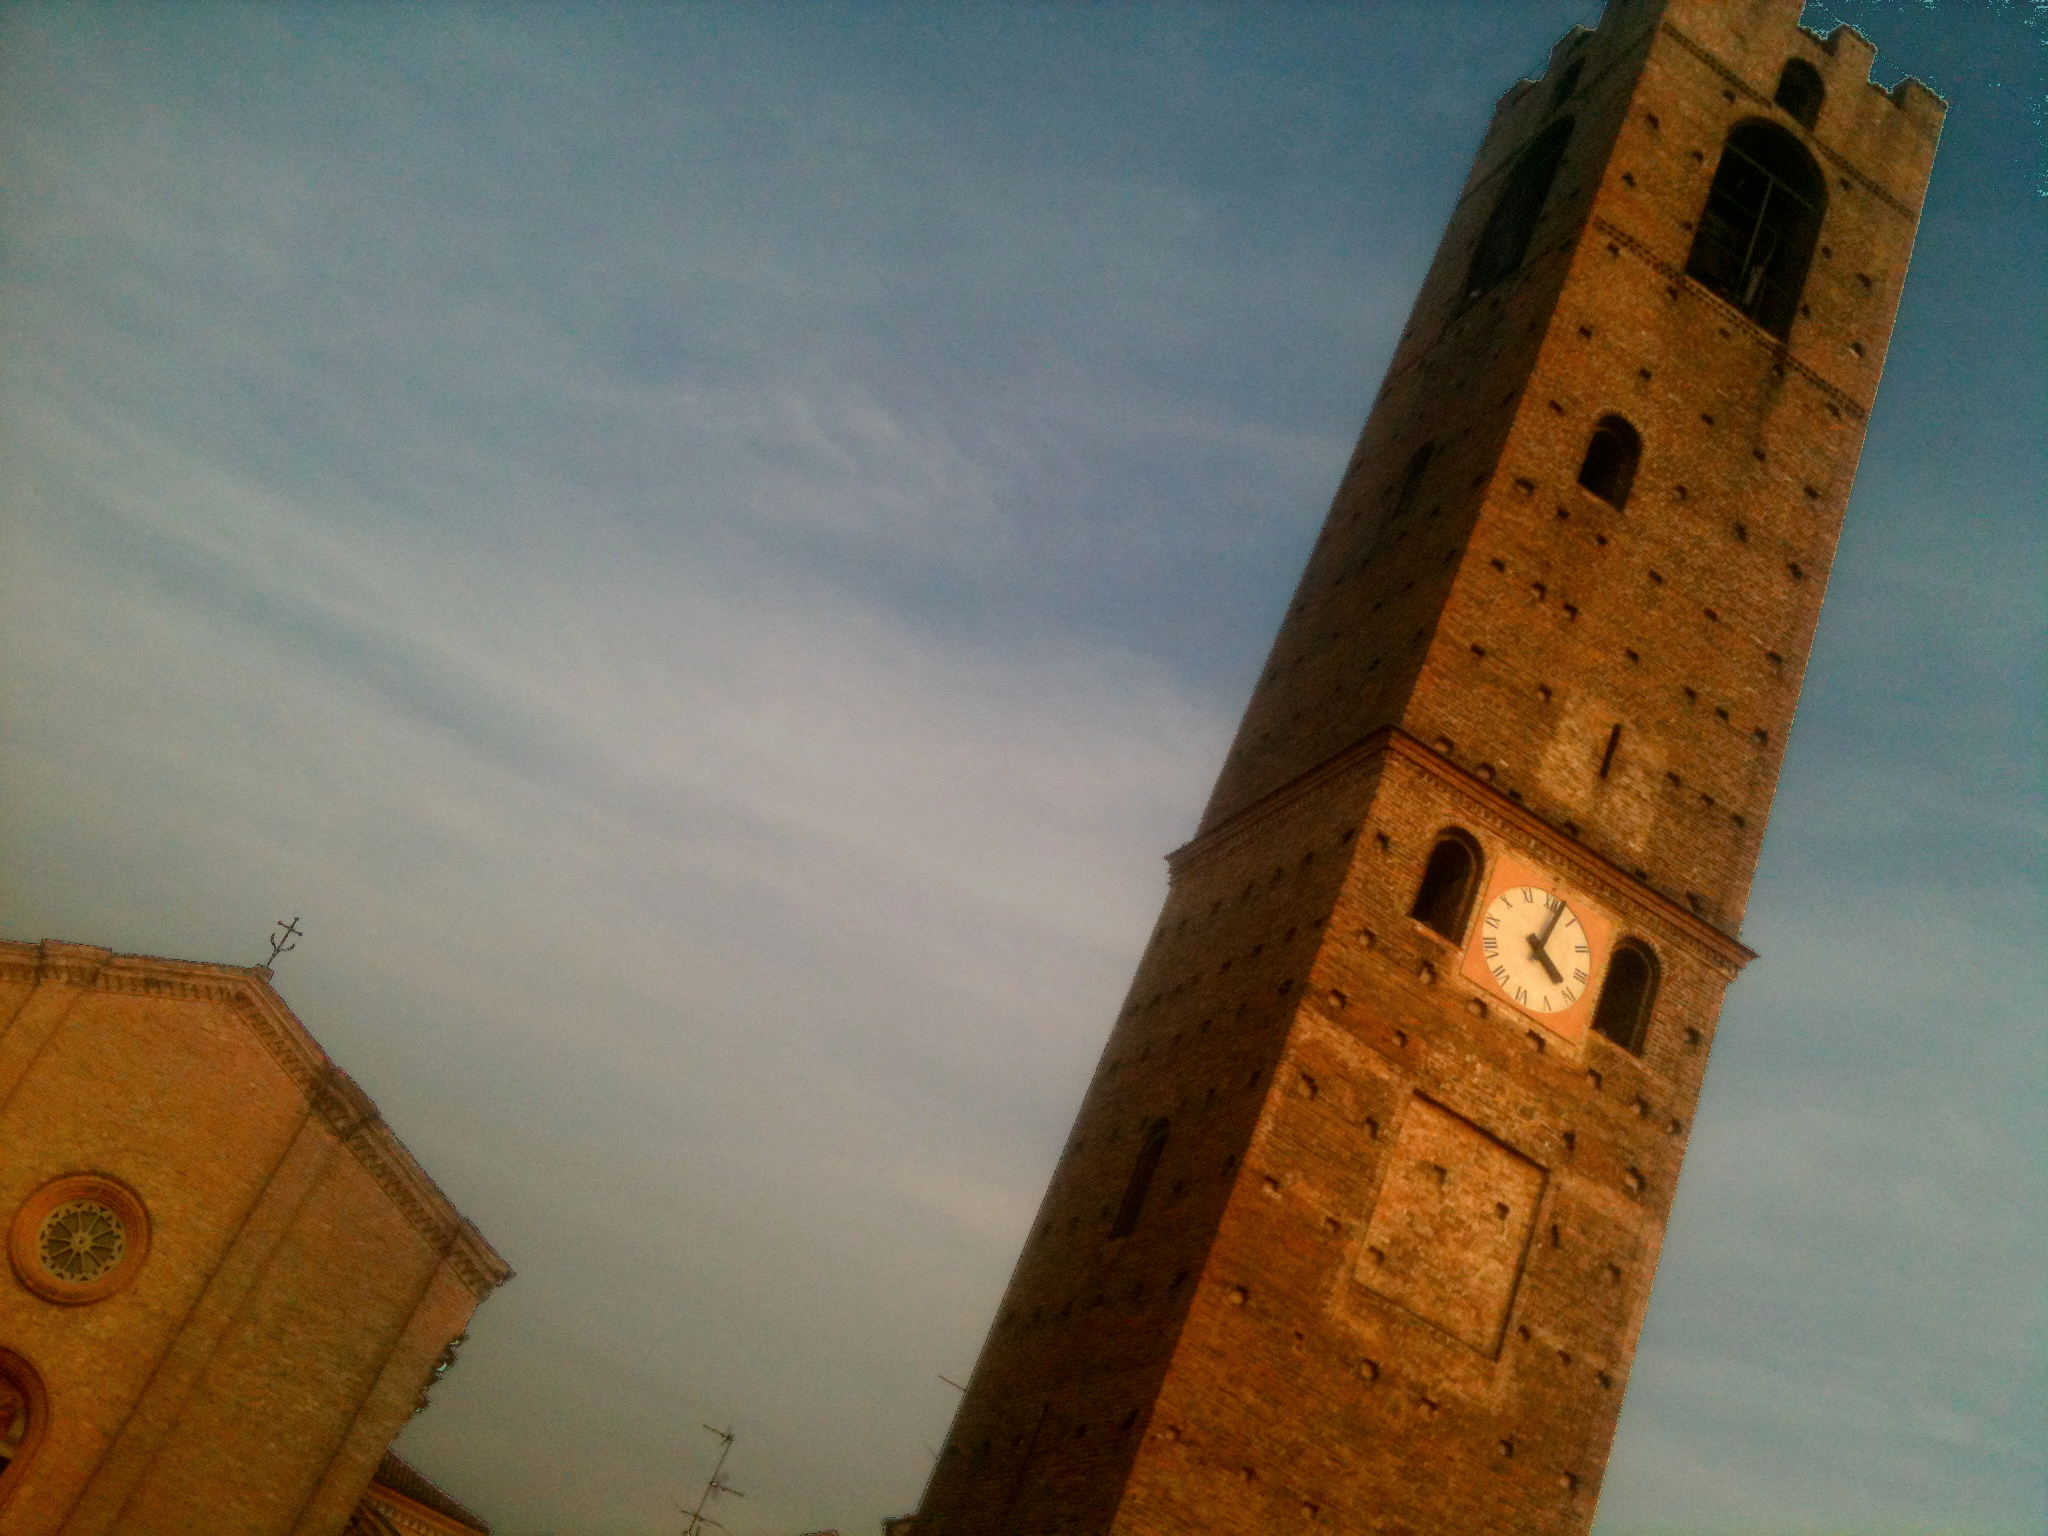 Parrocchiale e Torre campanaria. Mozzanica (BG), Novembre 2011